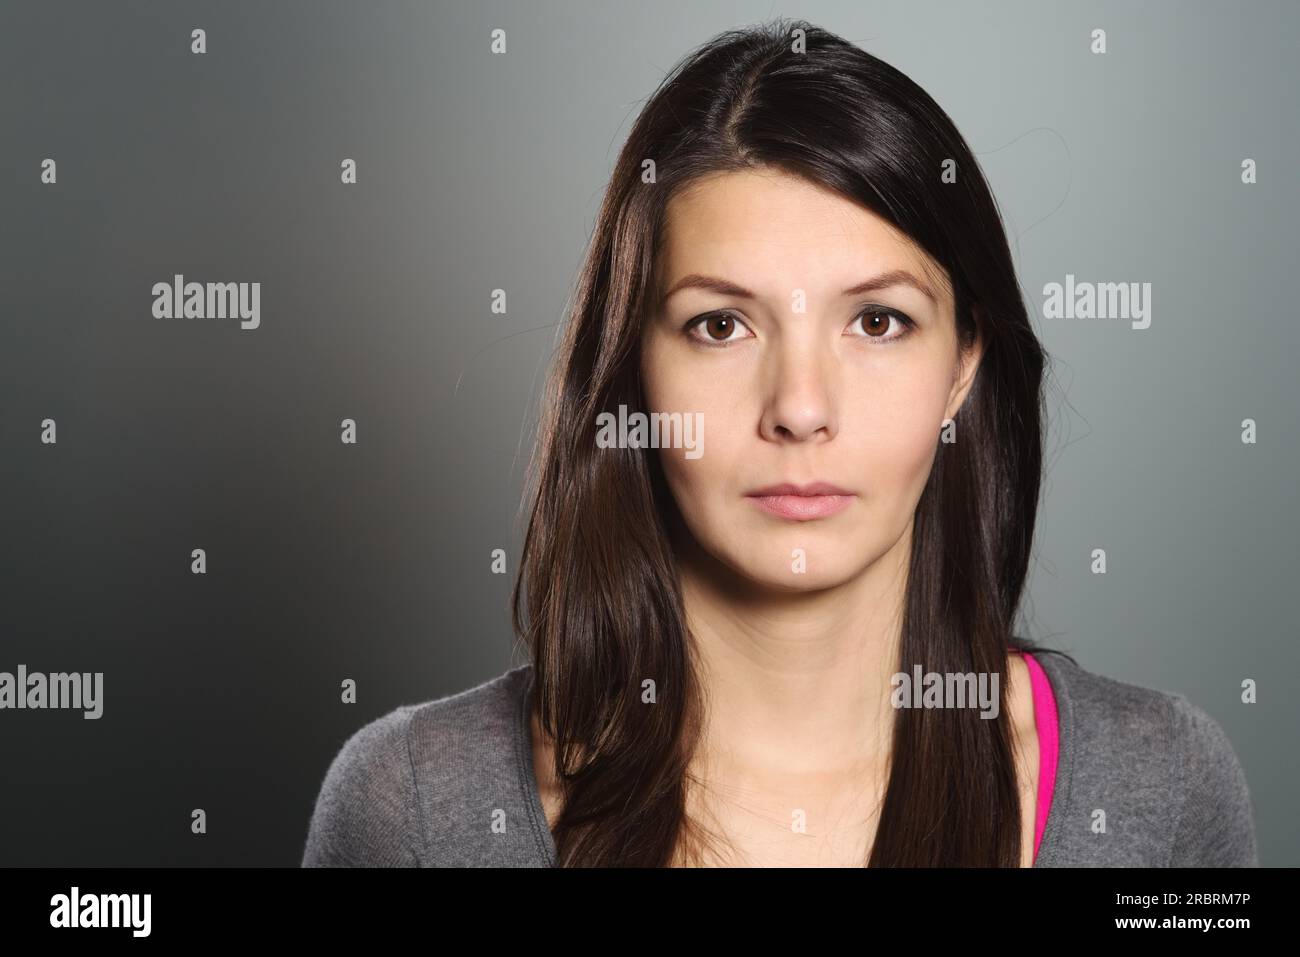 Ritratto della testa e delle spalle in grigio di una giovane donna che guarda direttamente la fotocamera Foto Stock